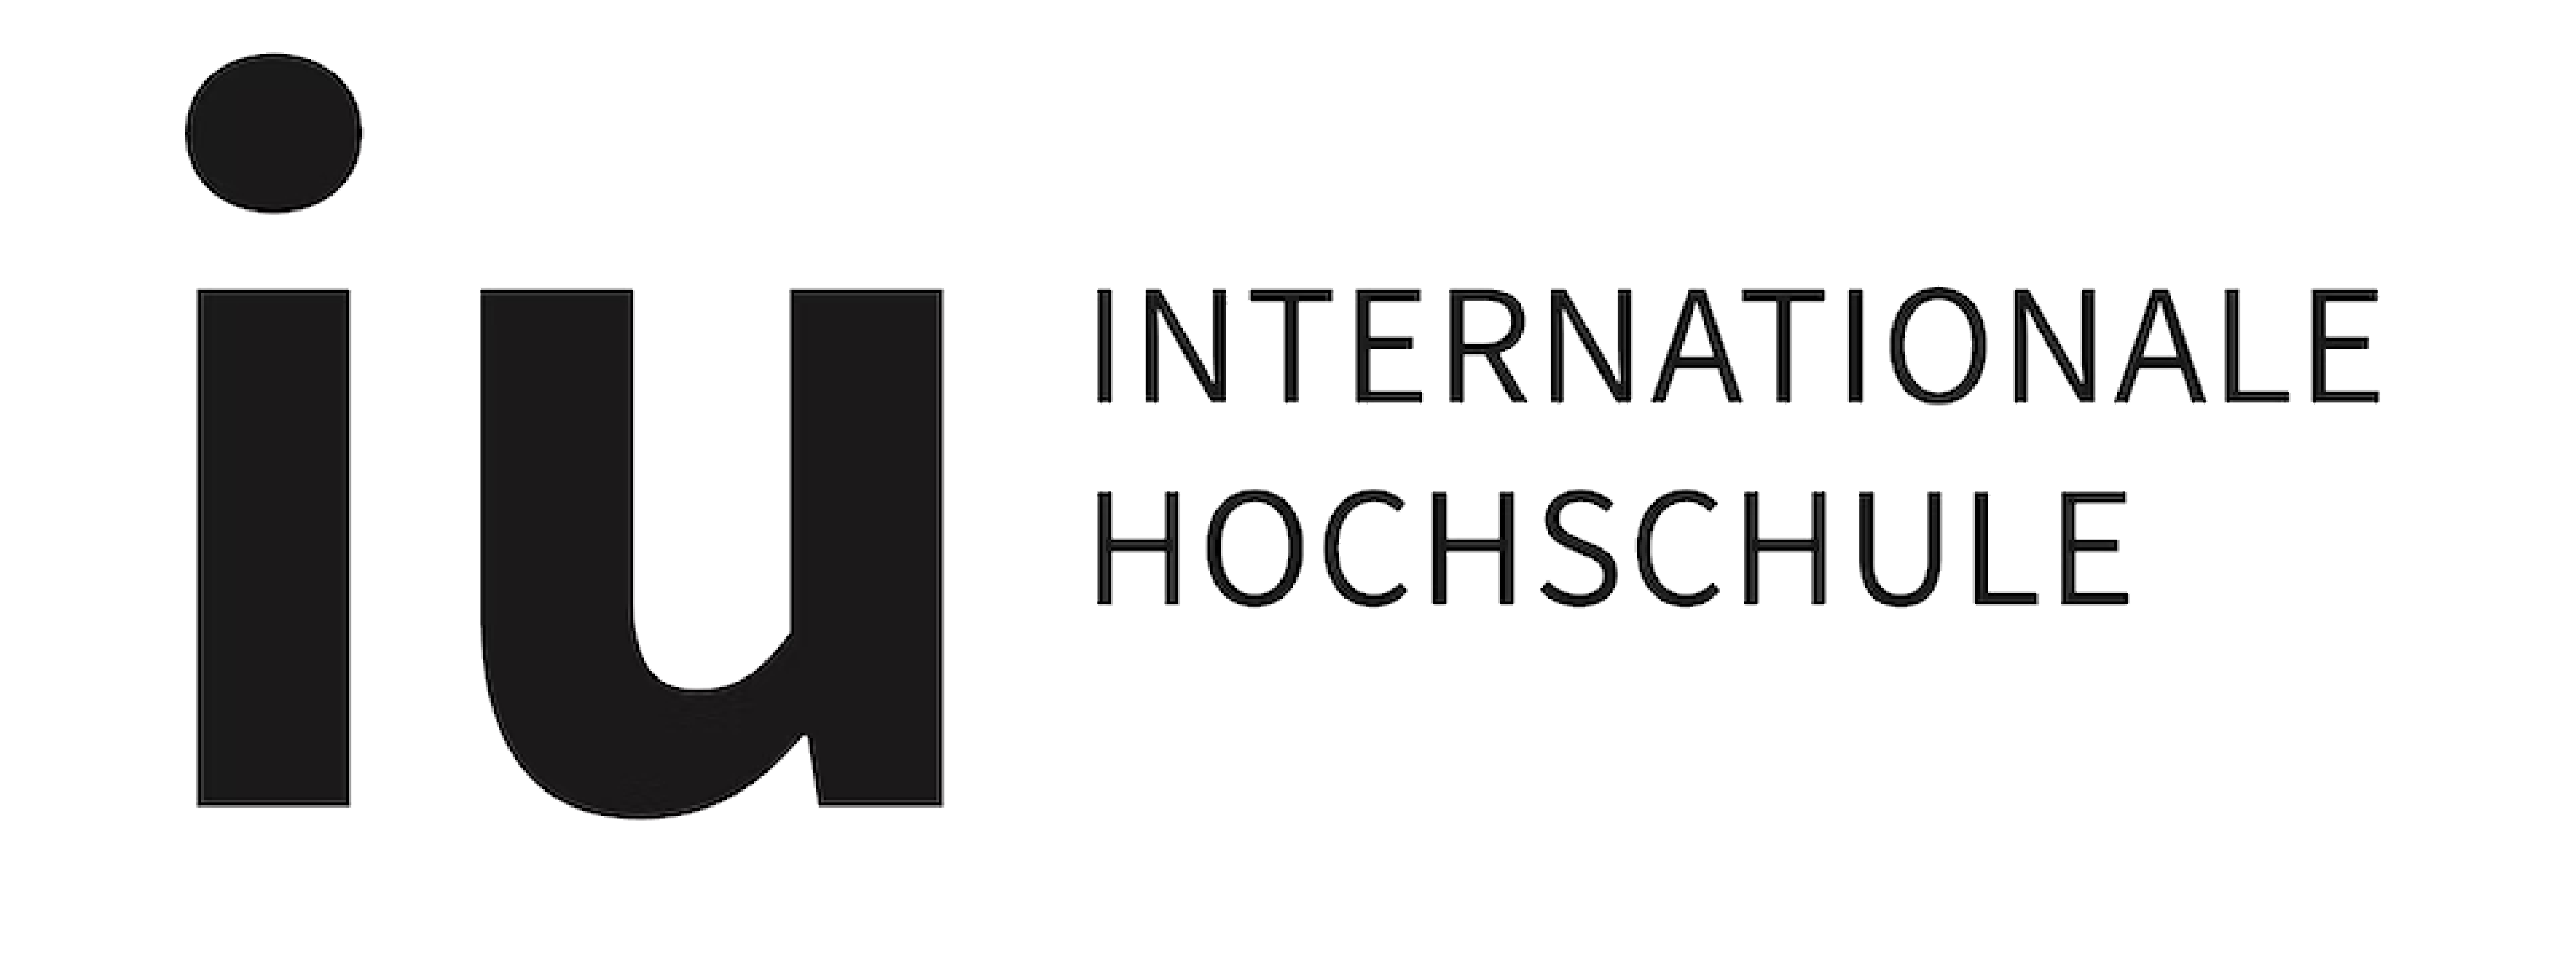 Logo der Hochschule IU Internationale Hochschule